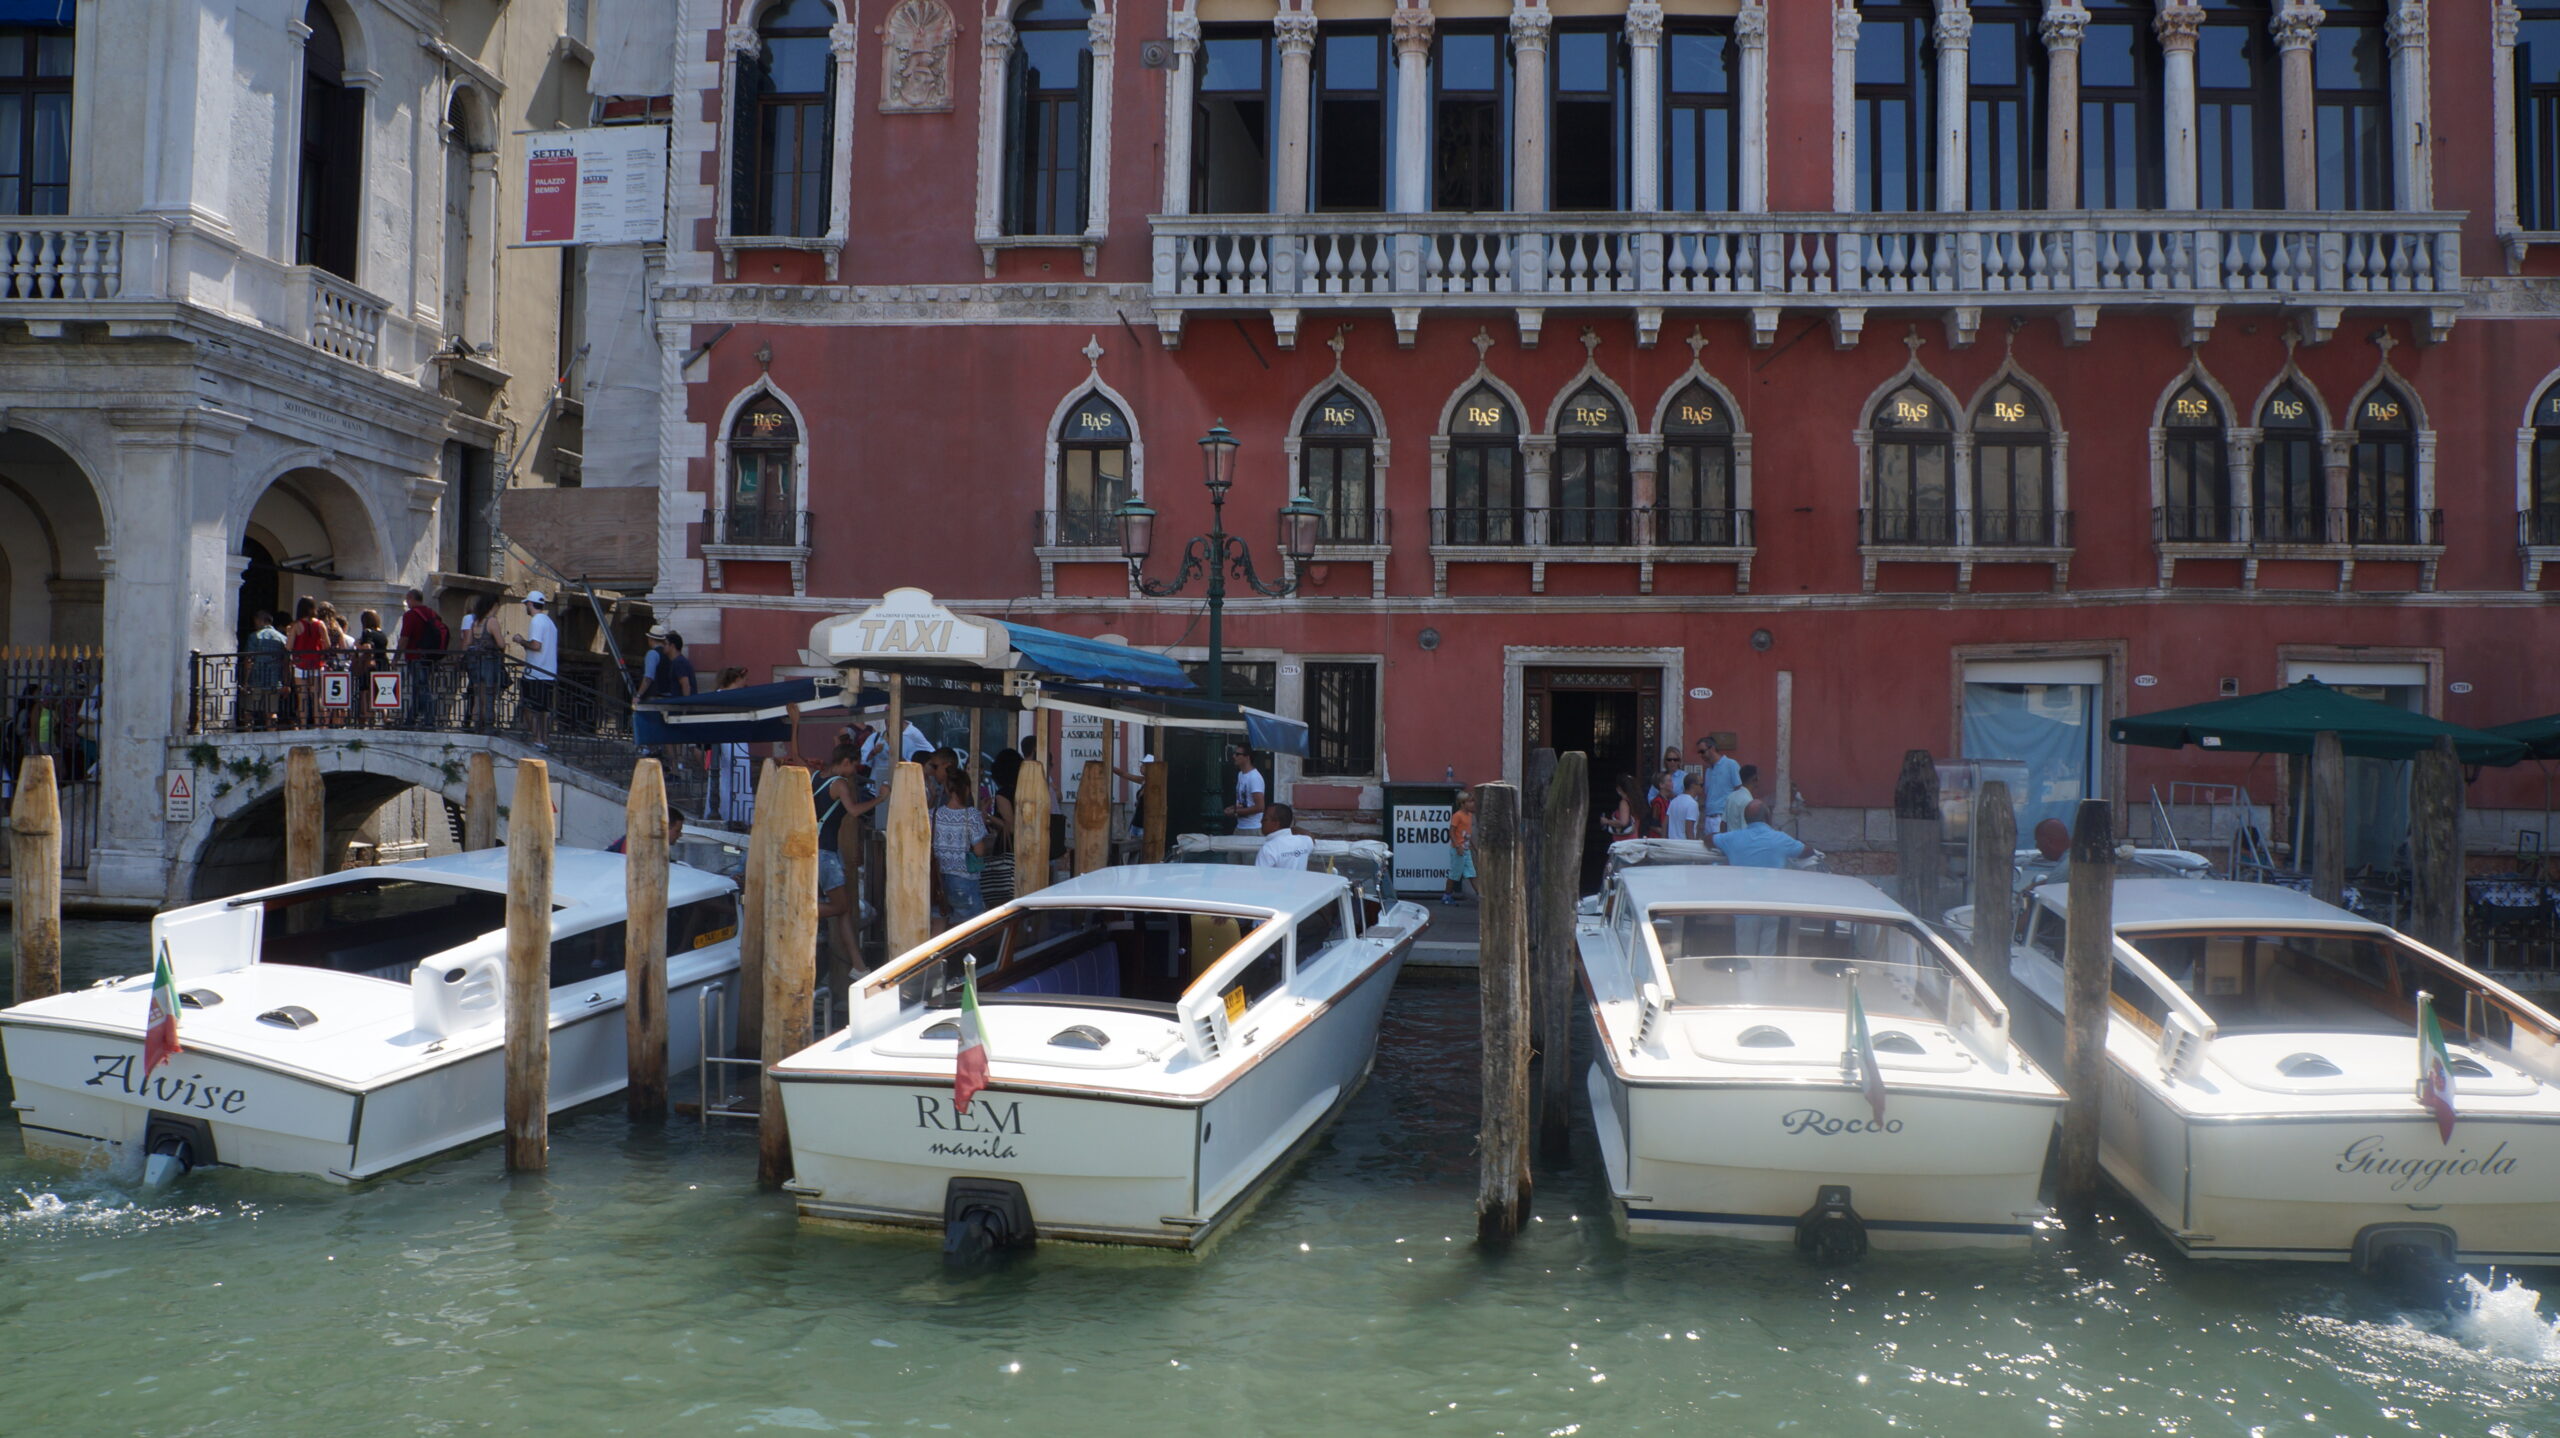 italya venedik taksileri veya evlerin önünde demirli tekneler